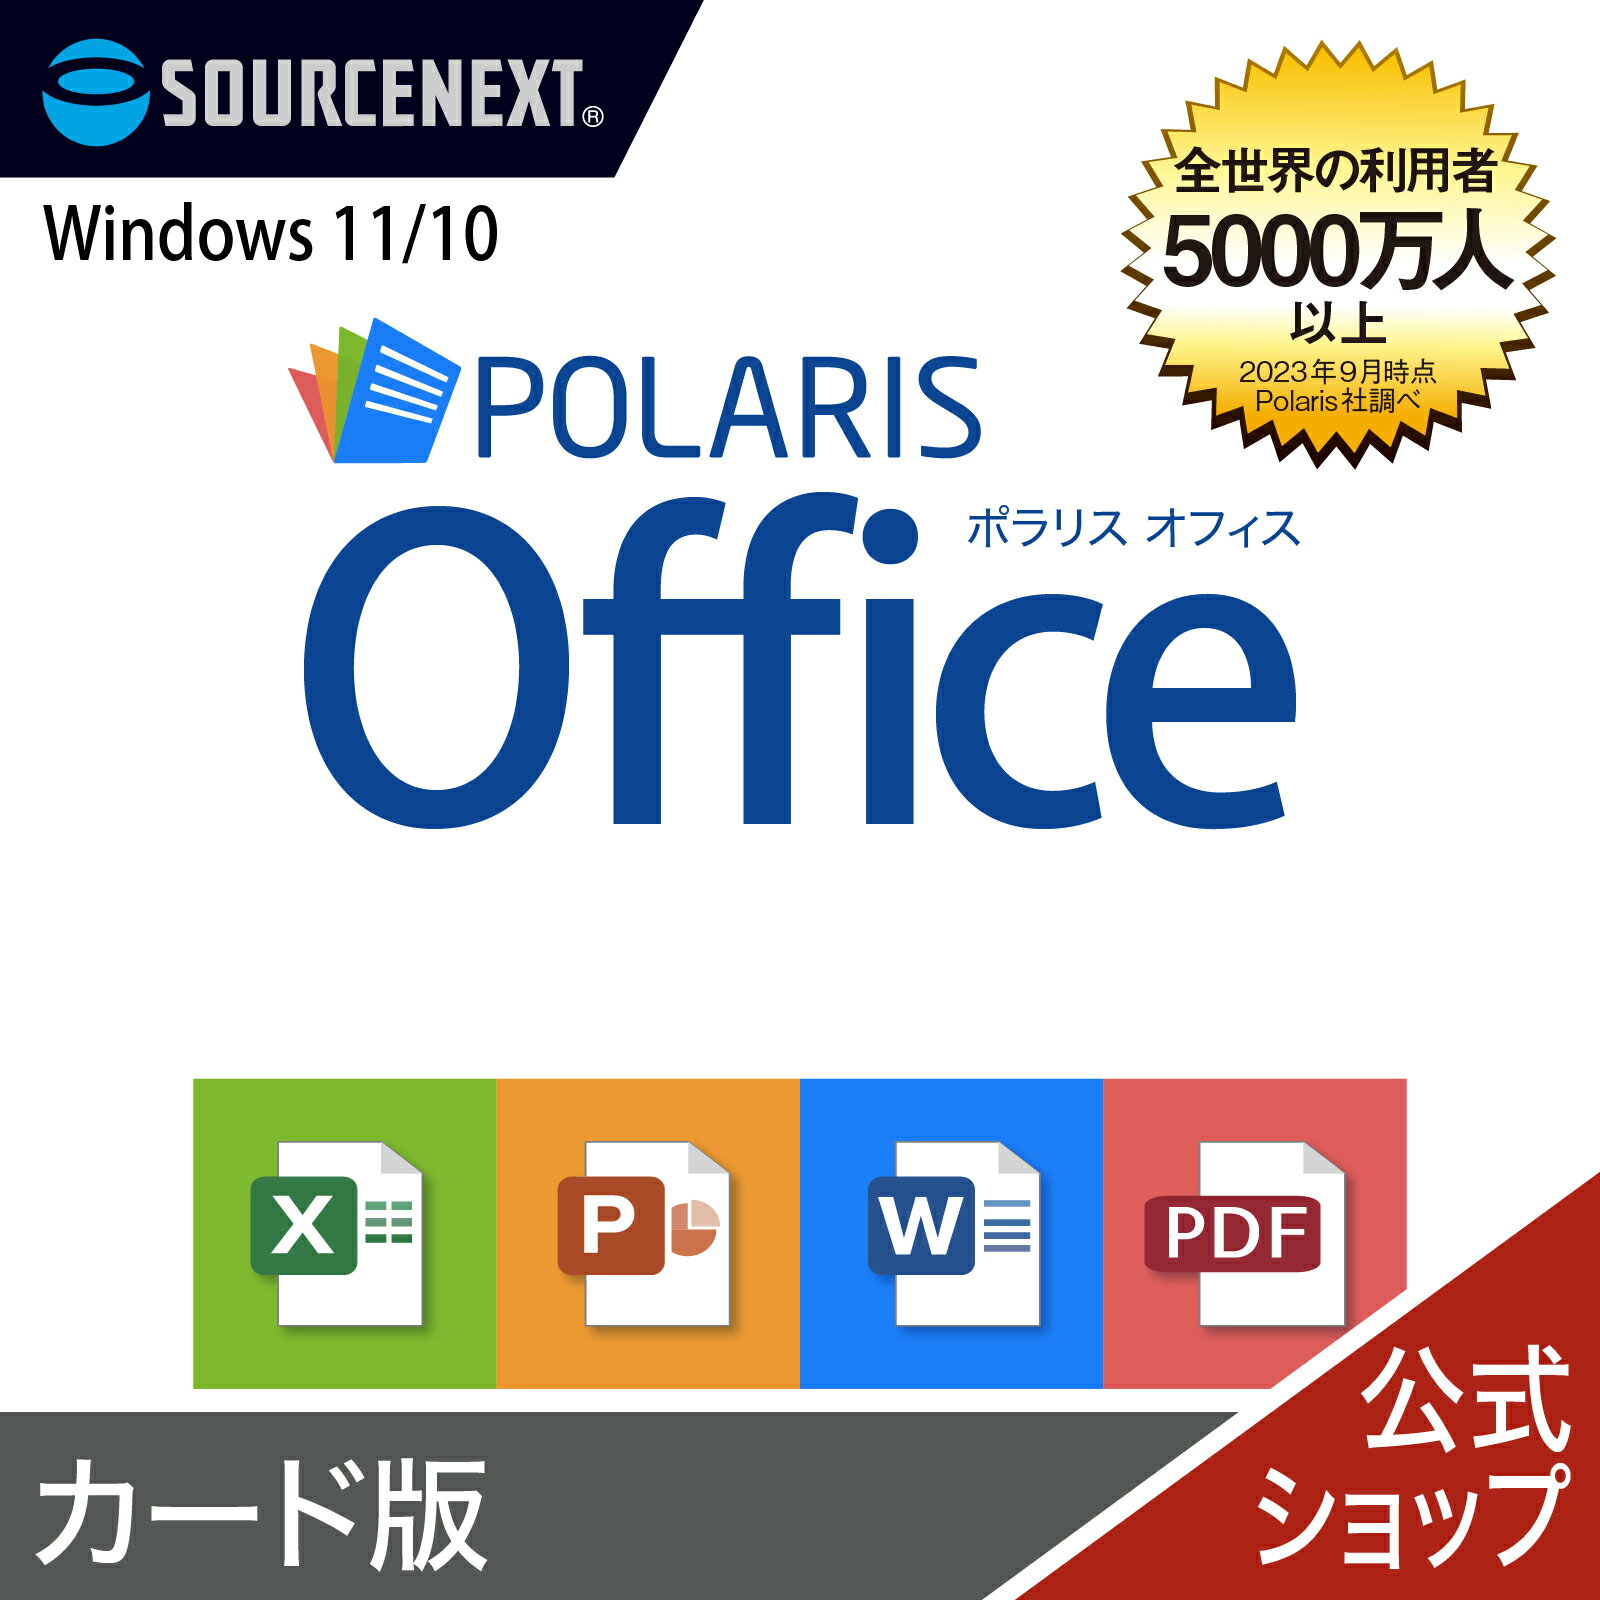 Polaris Office  ポラリス Microsoft Office オフィス 互換性 Excel PowerPoint Word パワーポイント エクセルソフト ワード